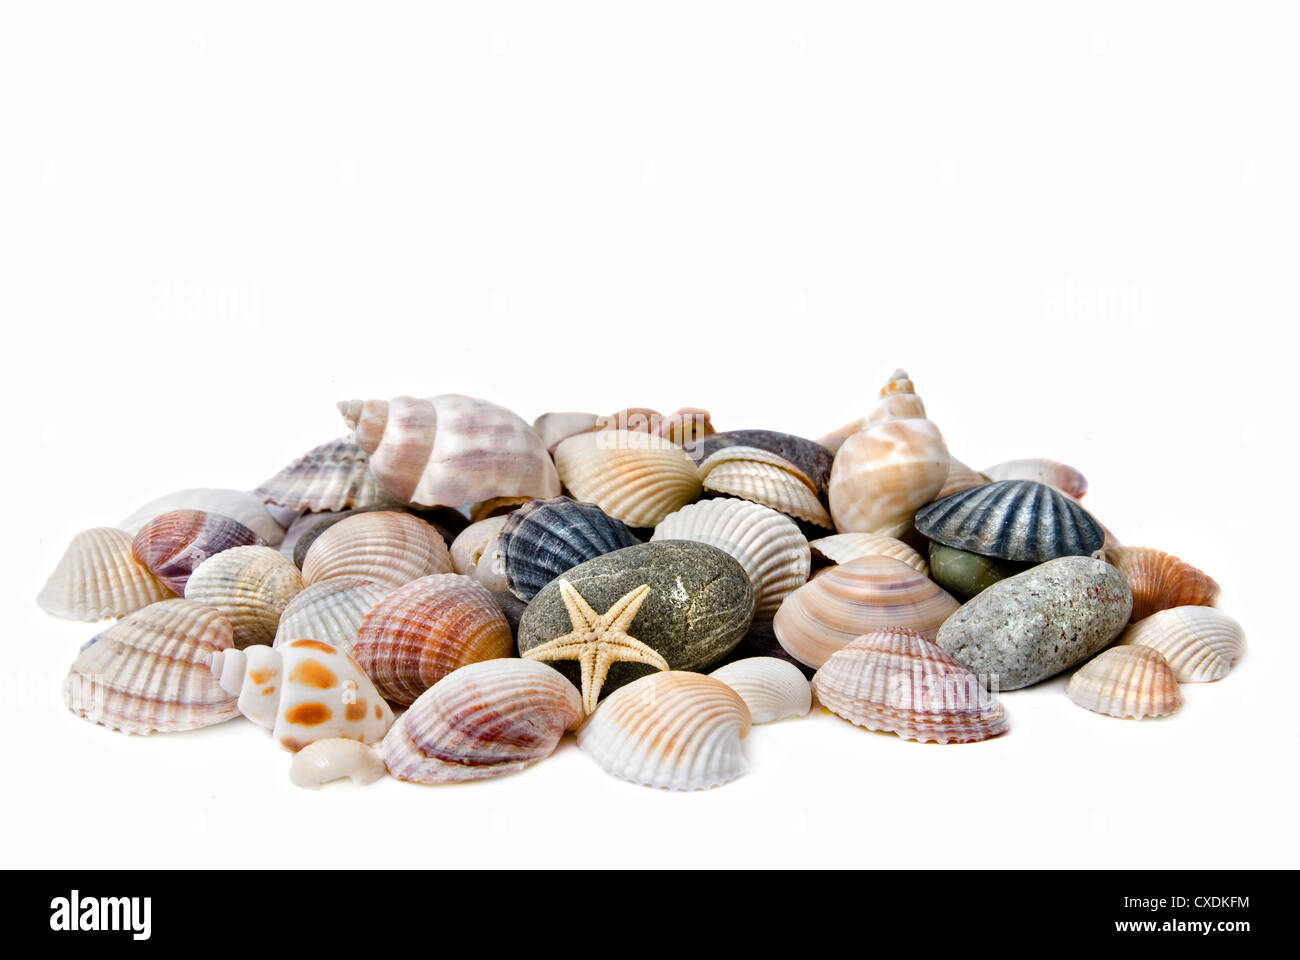 Sea shells on white Stock Photo